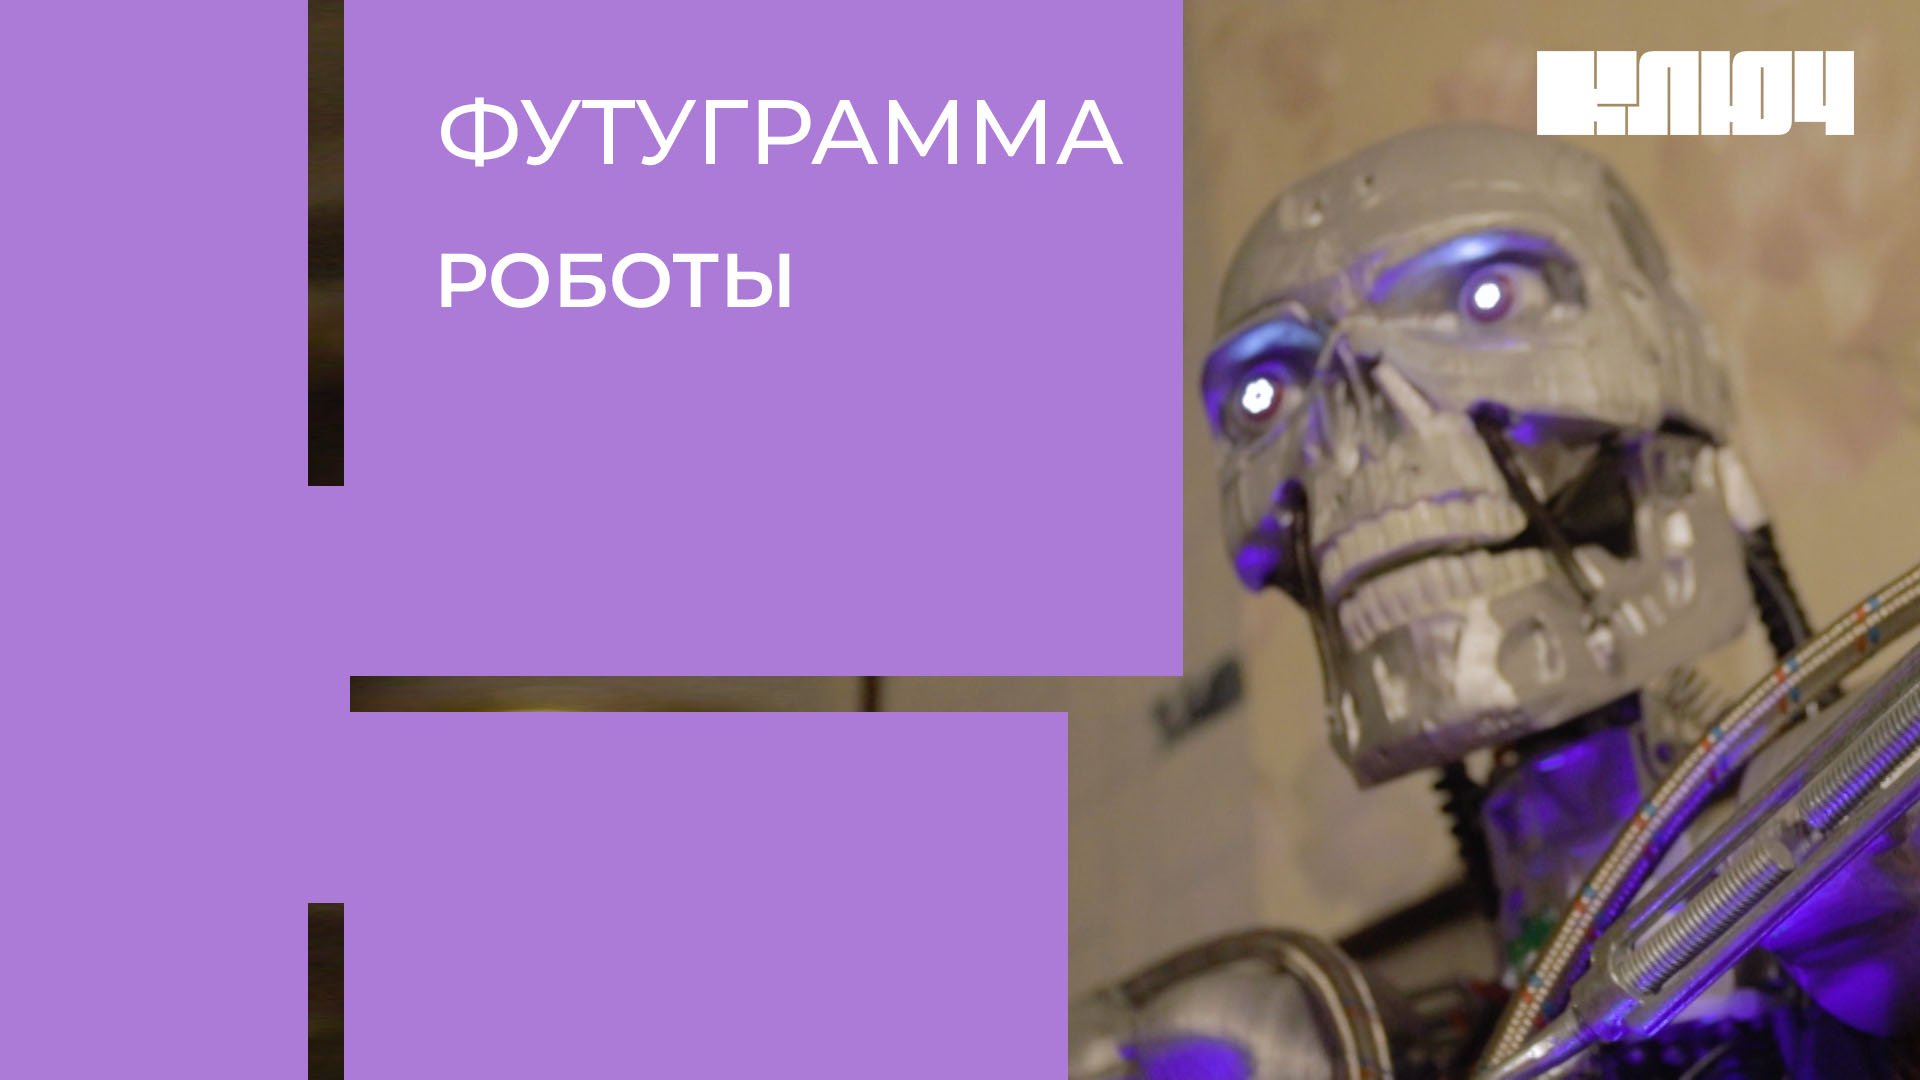 Пермский терминатор, битва роботов и механическая собака – роботы в России | Футуграмма